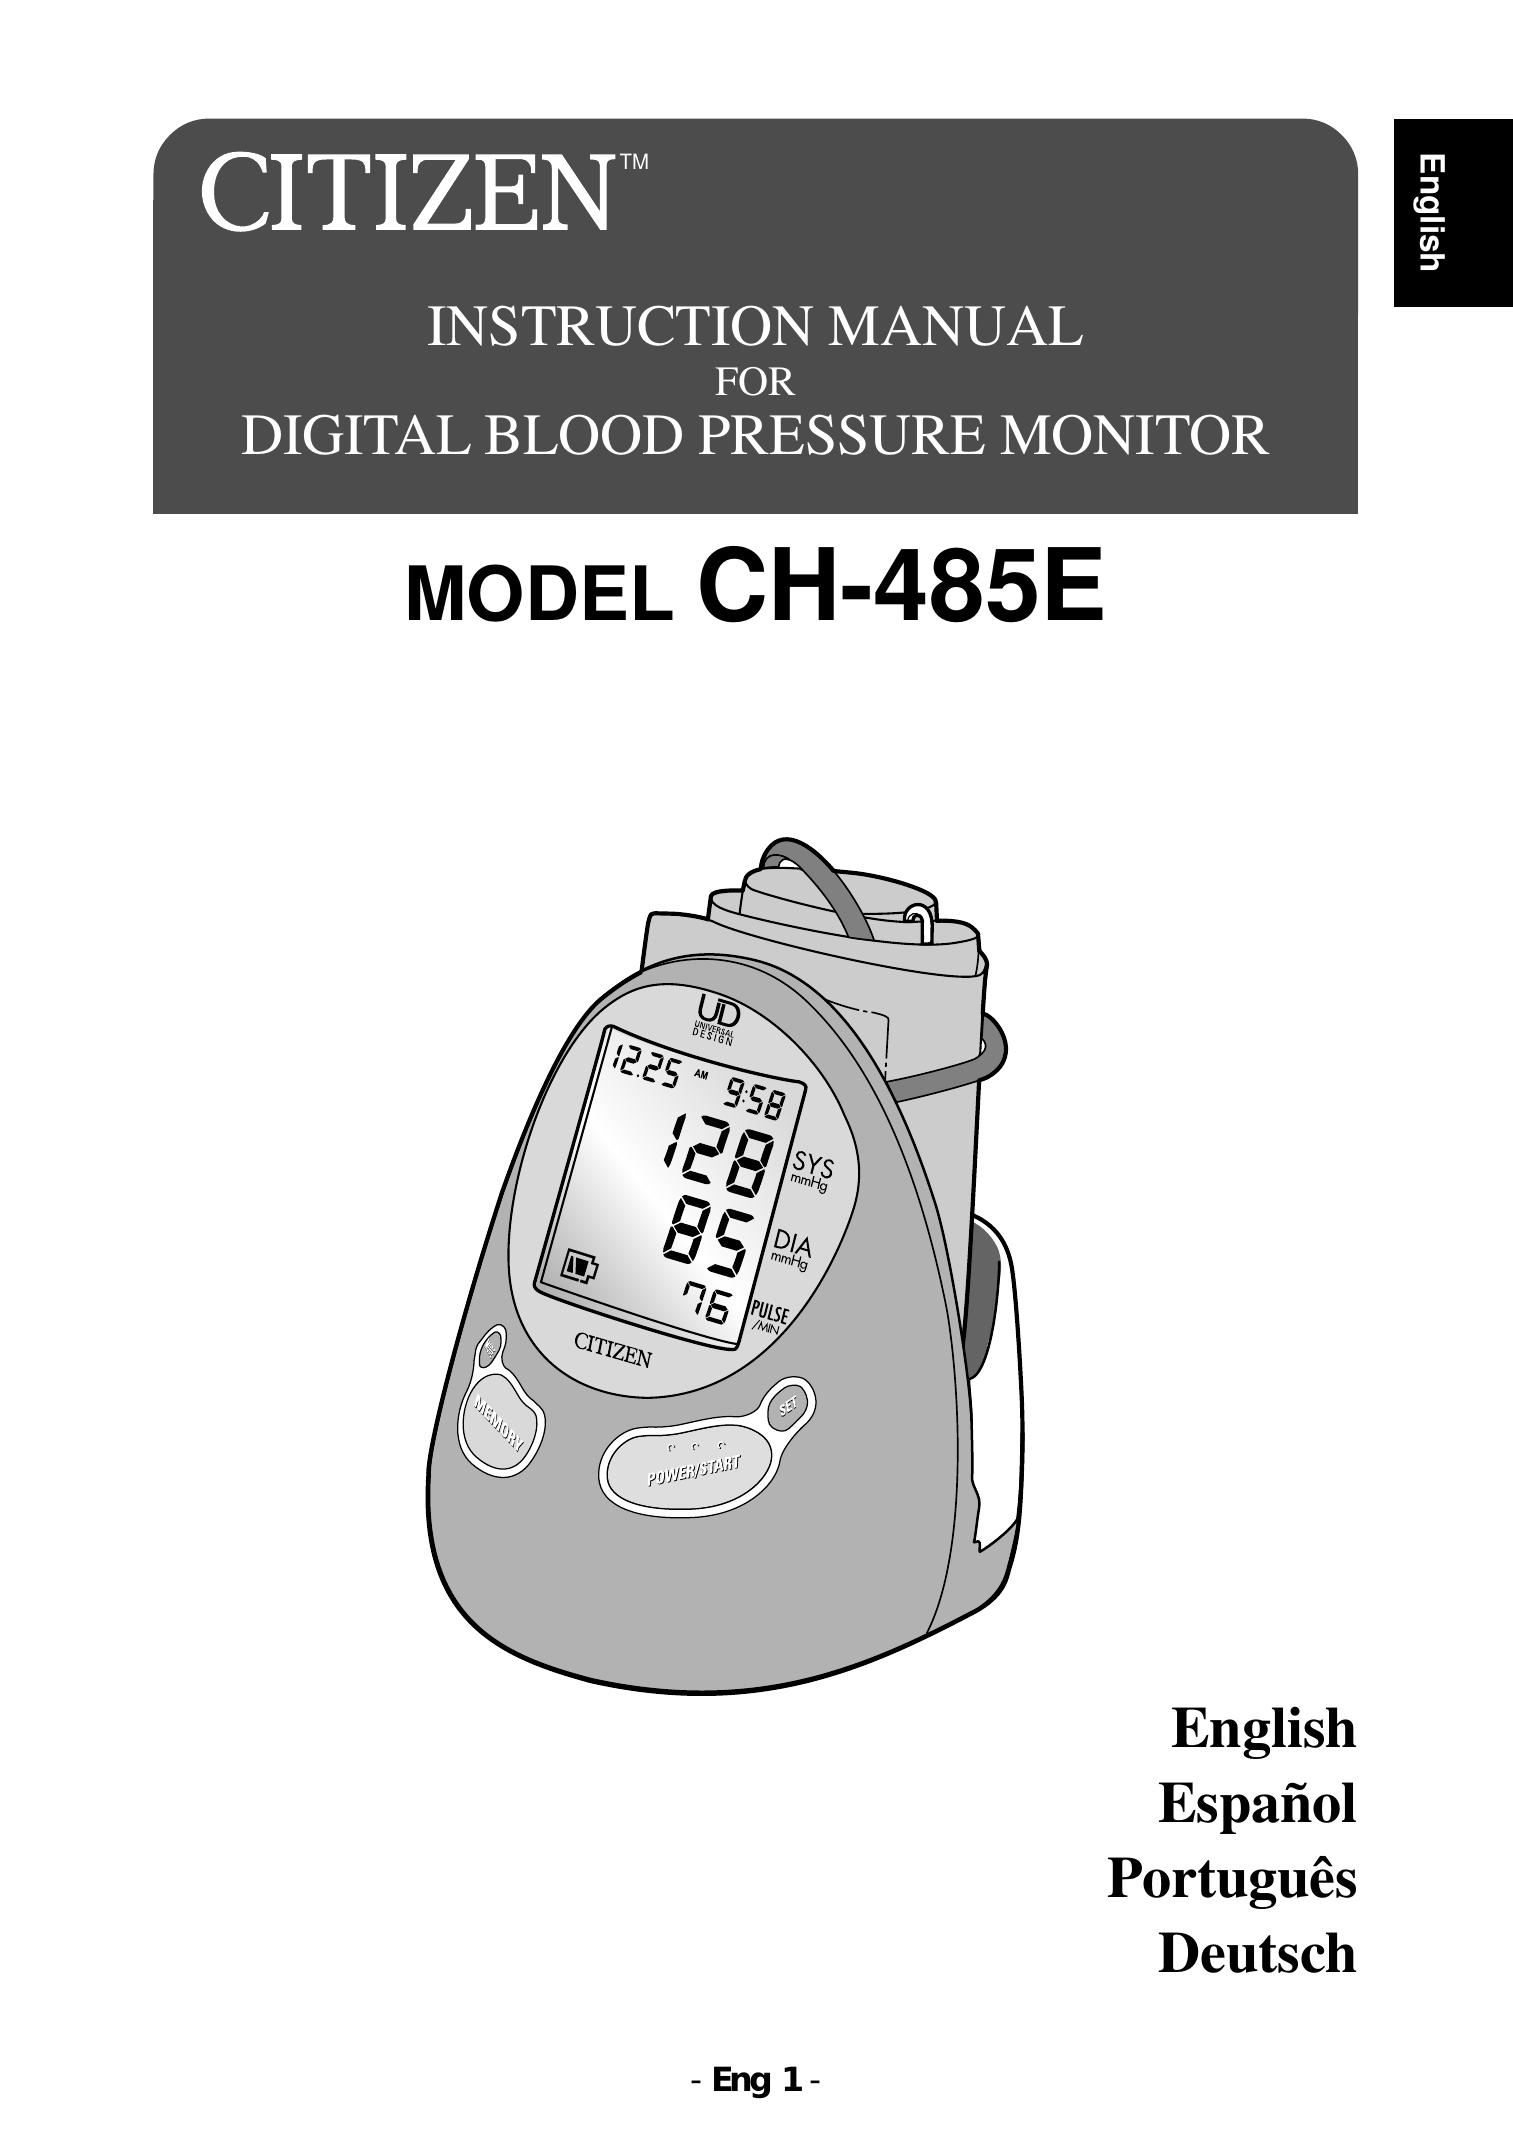 Citizen CH-485E Blood Pressure Monitor User Manual